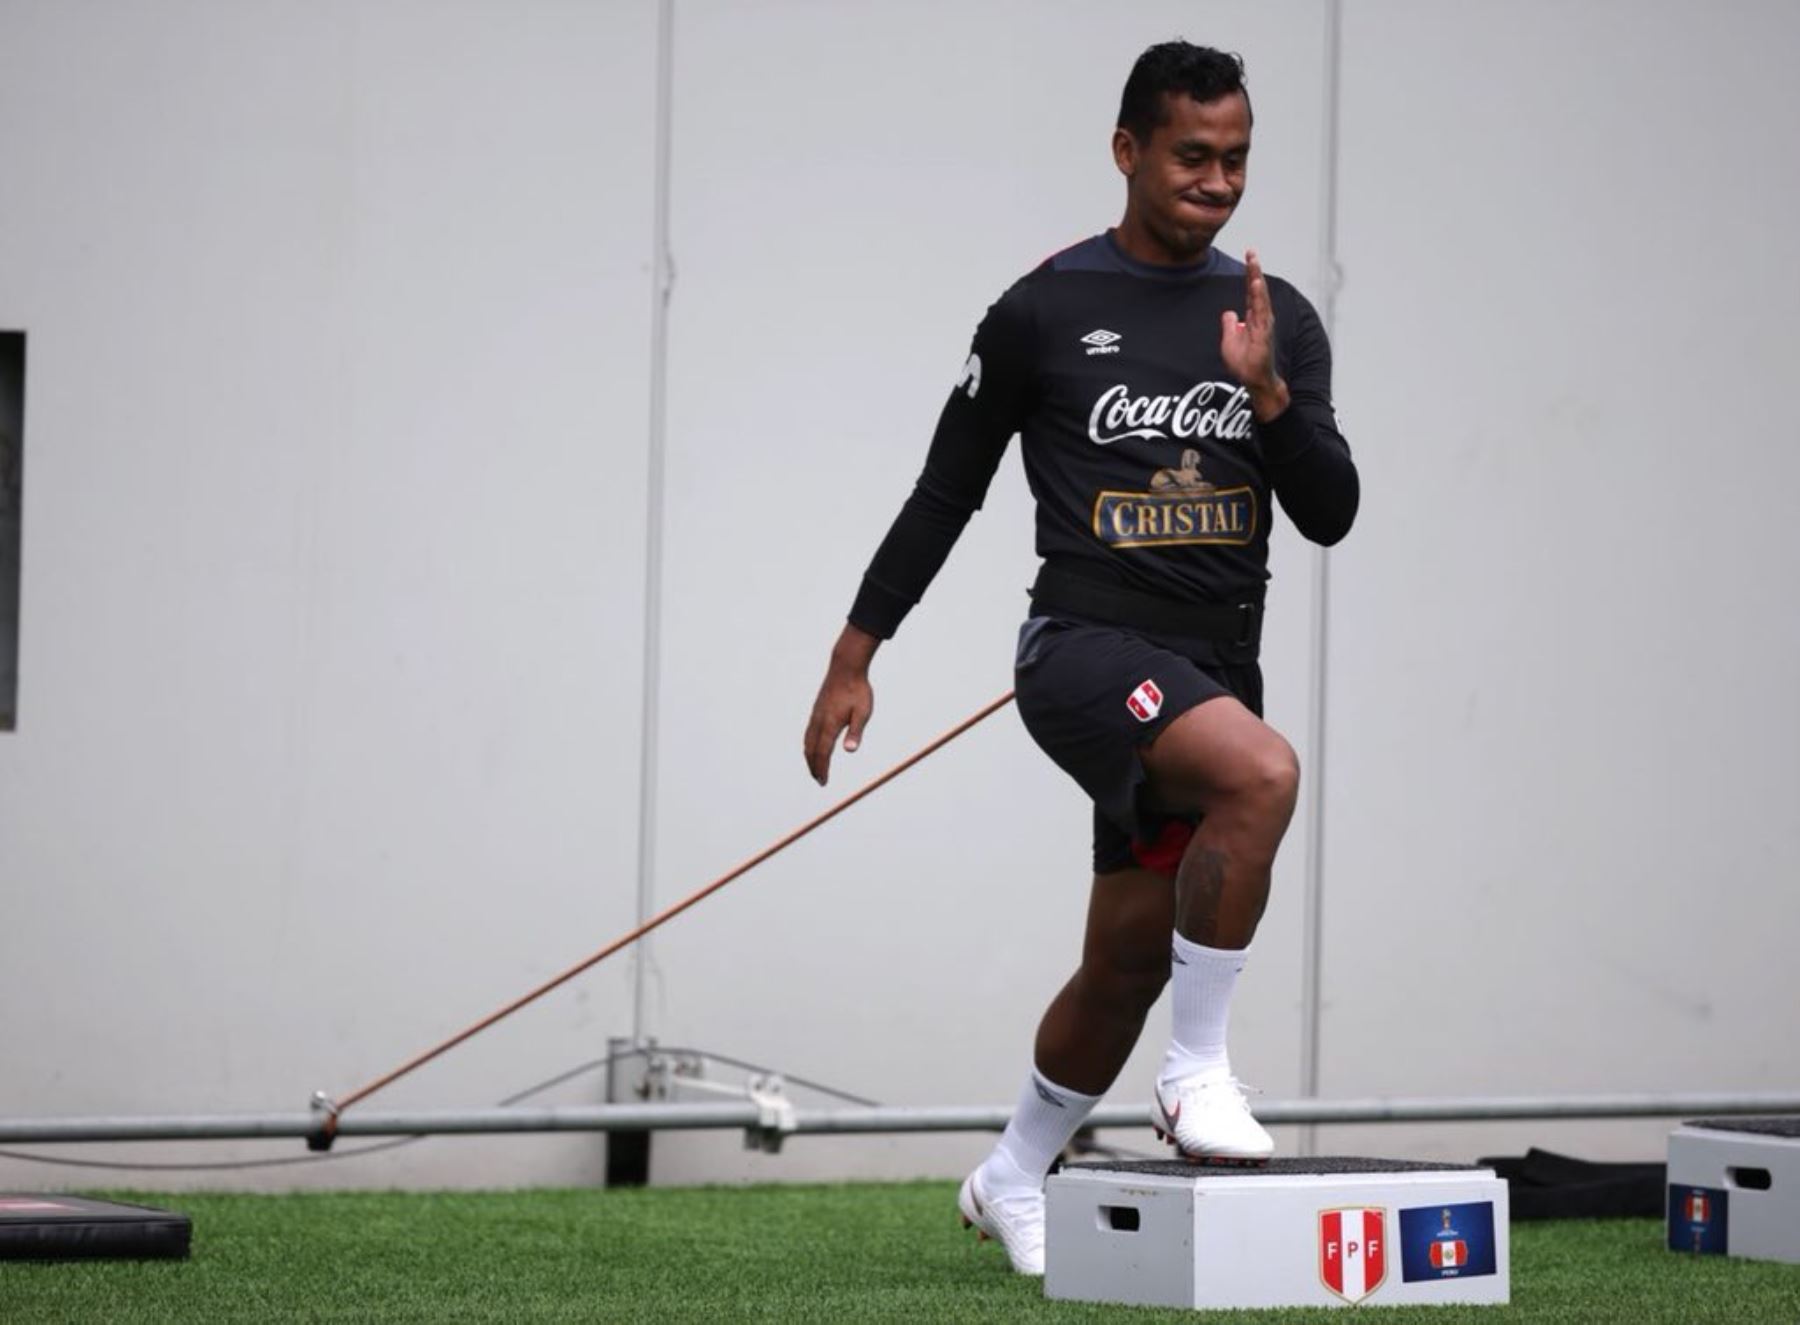 La selección peruana cumplió su tercer día de entrenamiento. Renato Tapia  fue exigido